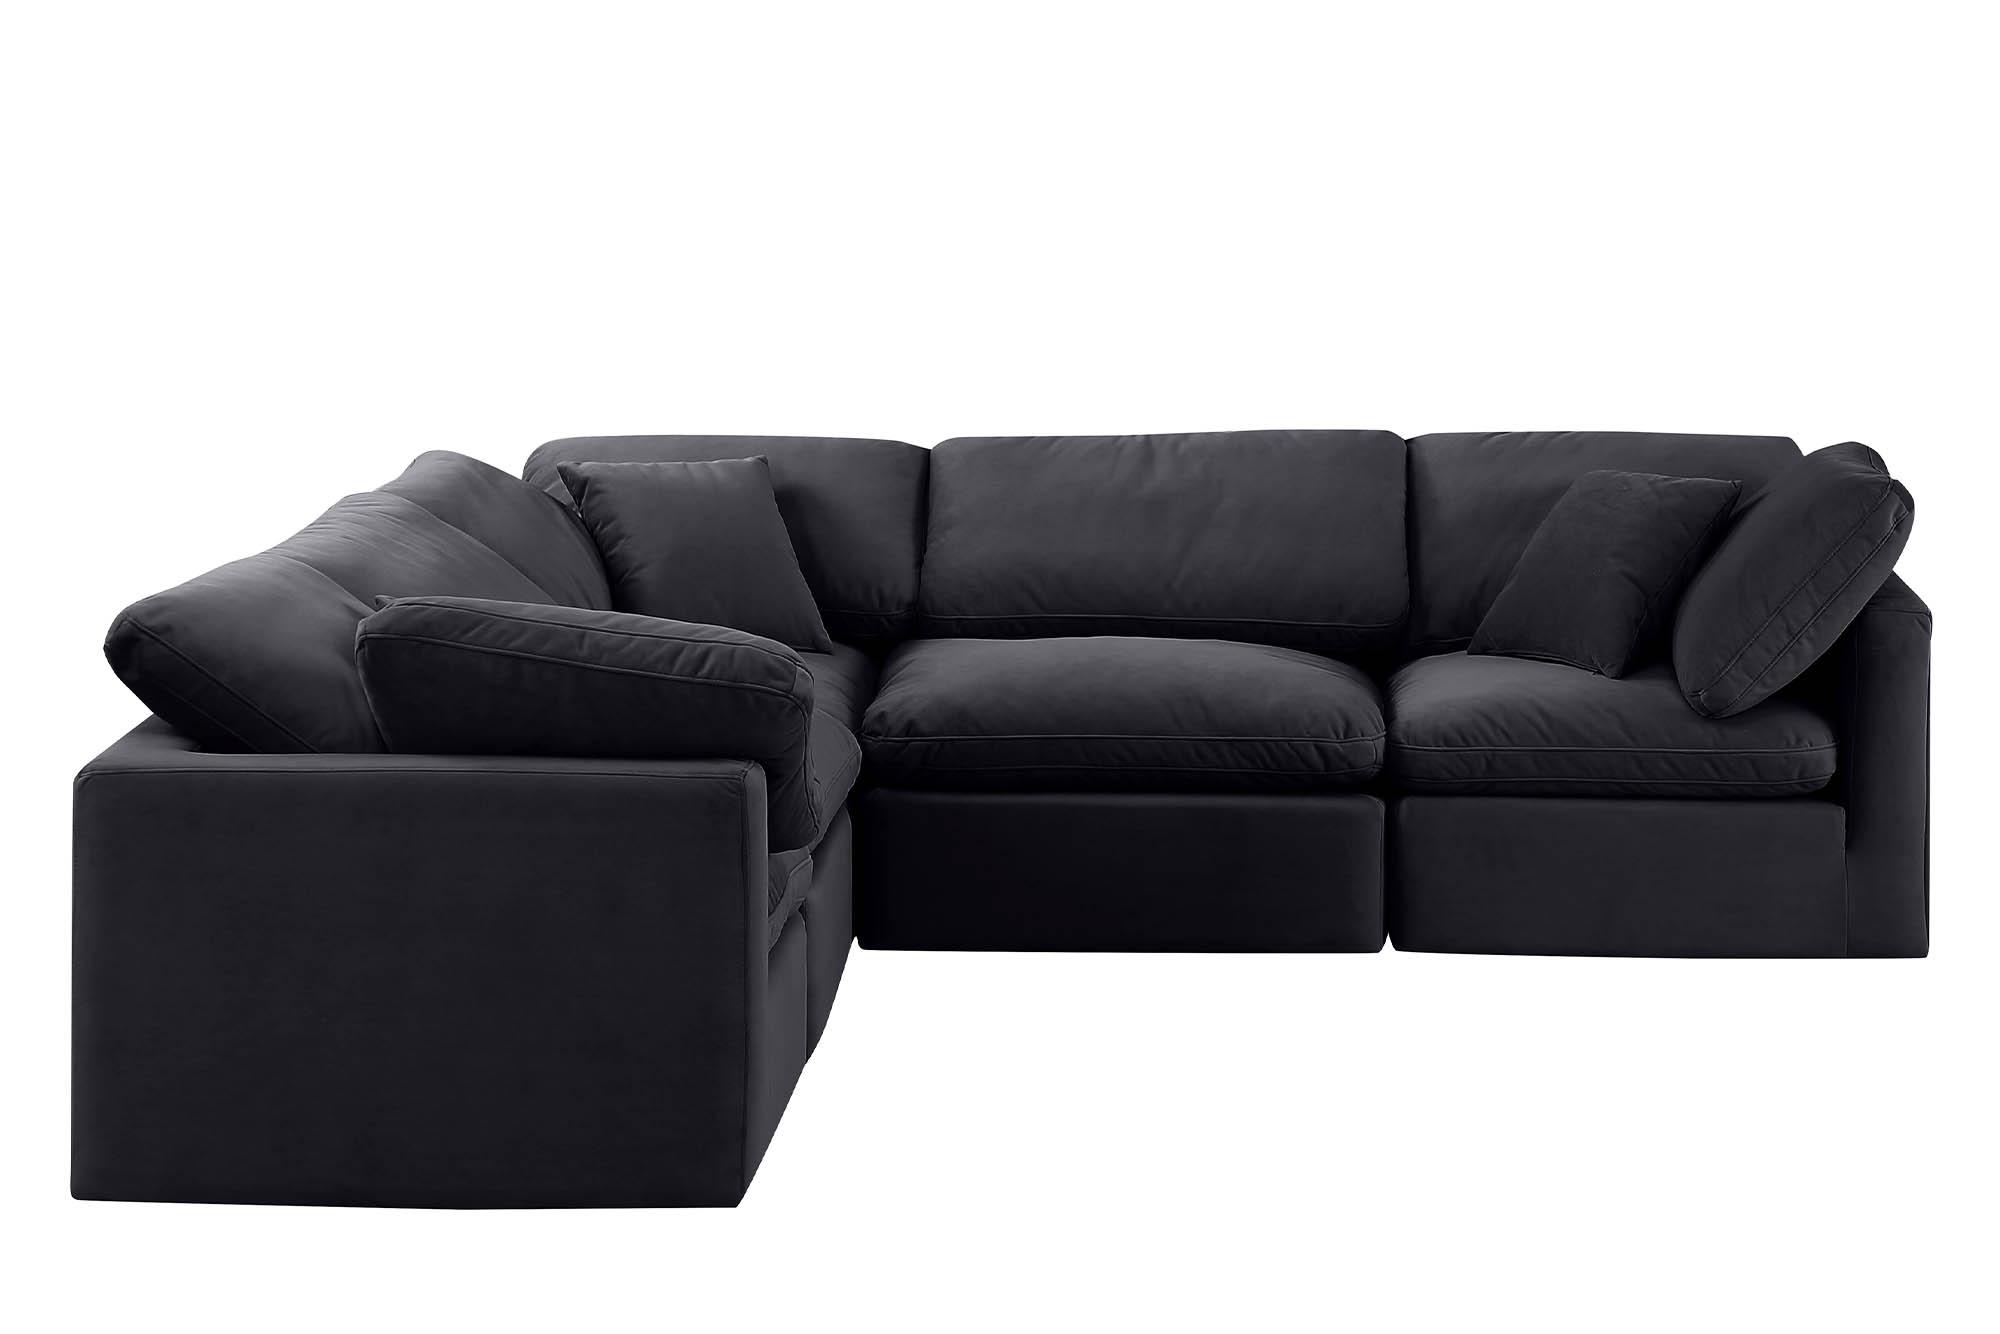 

    
Meridian Furniture INDULGE 147Black-Sec5C Modular Sectional Sofa Black 147Black-Sec5C
